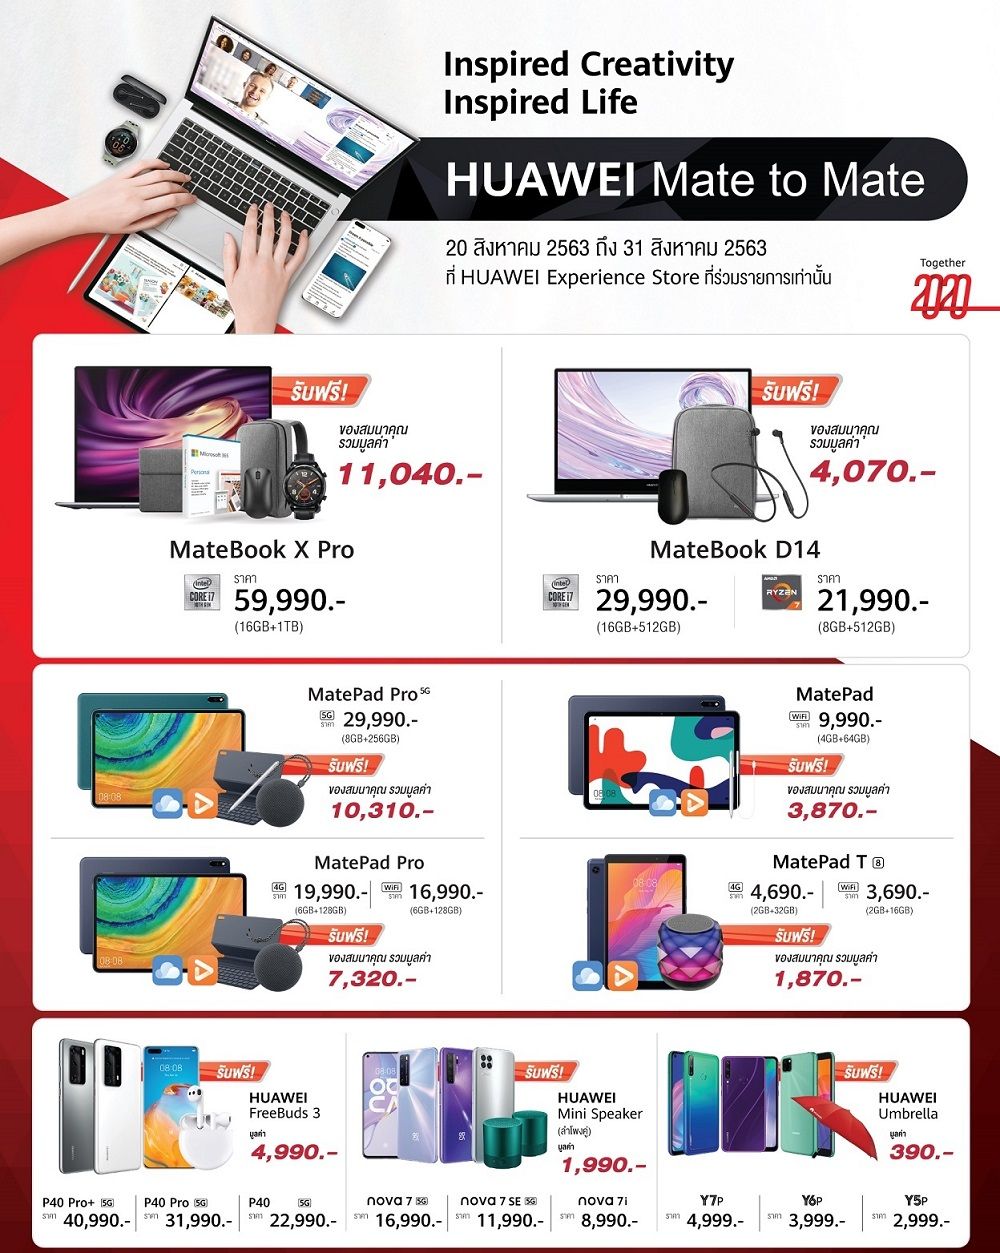 รวมโปร Huawei COMMART-EXPO 2020 ลด MateBook D15 เหลือเพียง 13,990 บาท พร้อมของแถมเพียบ เริ่ม 20 สิงหาคม 2020 นี้